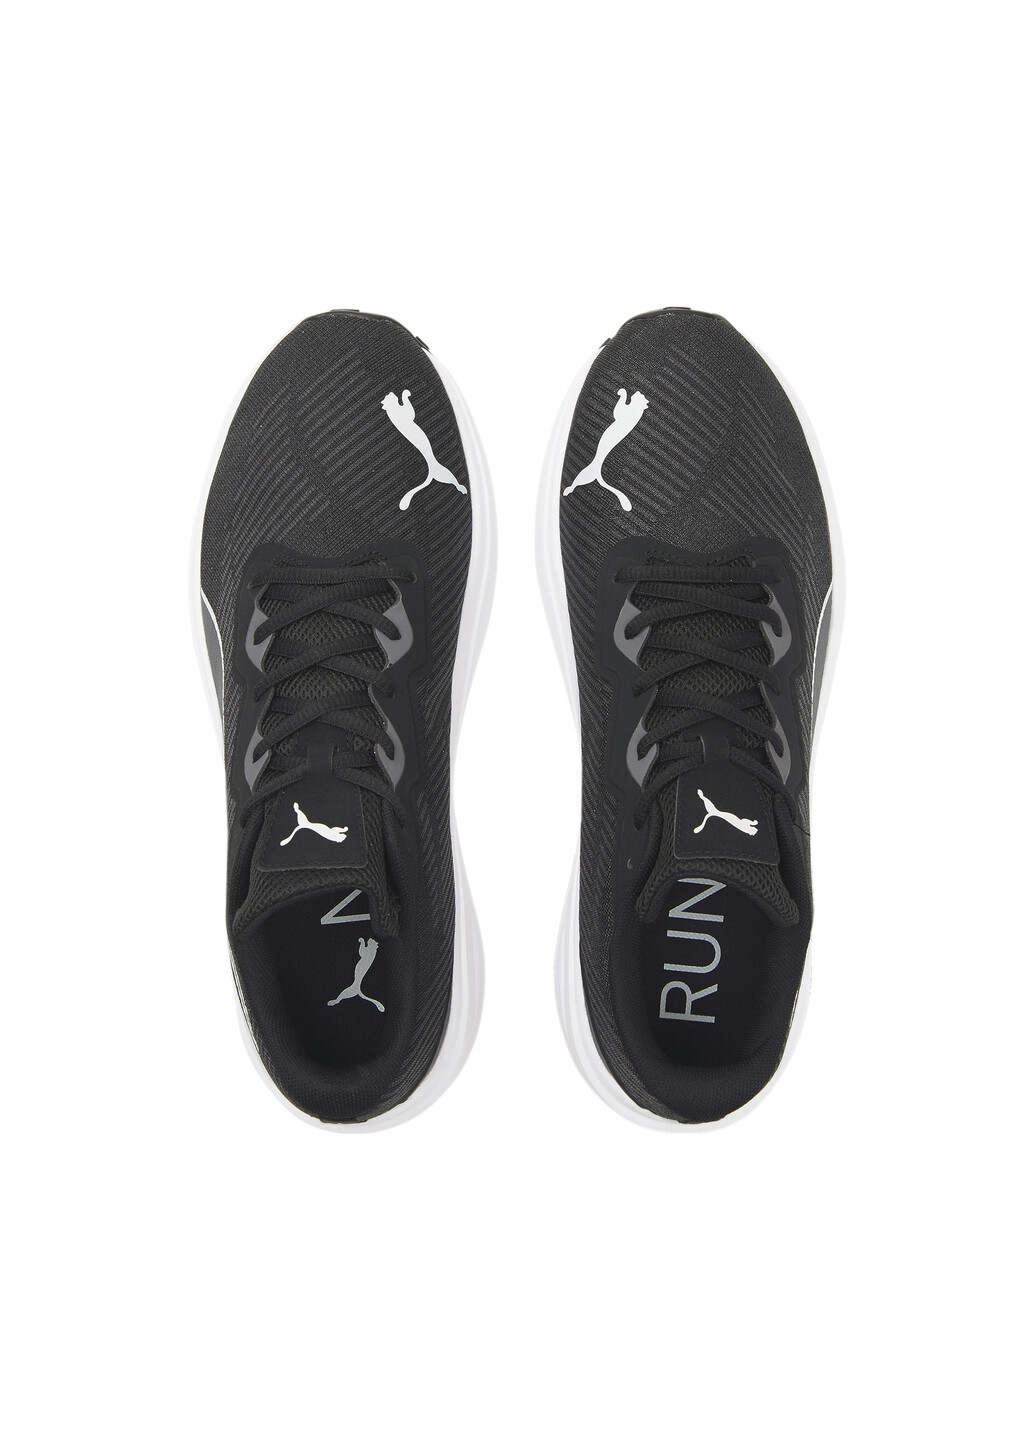 Черные всесезонные кроссовки aviator profoam sky running shoes Puma